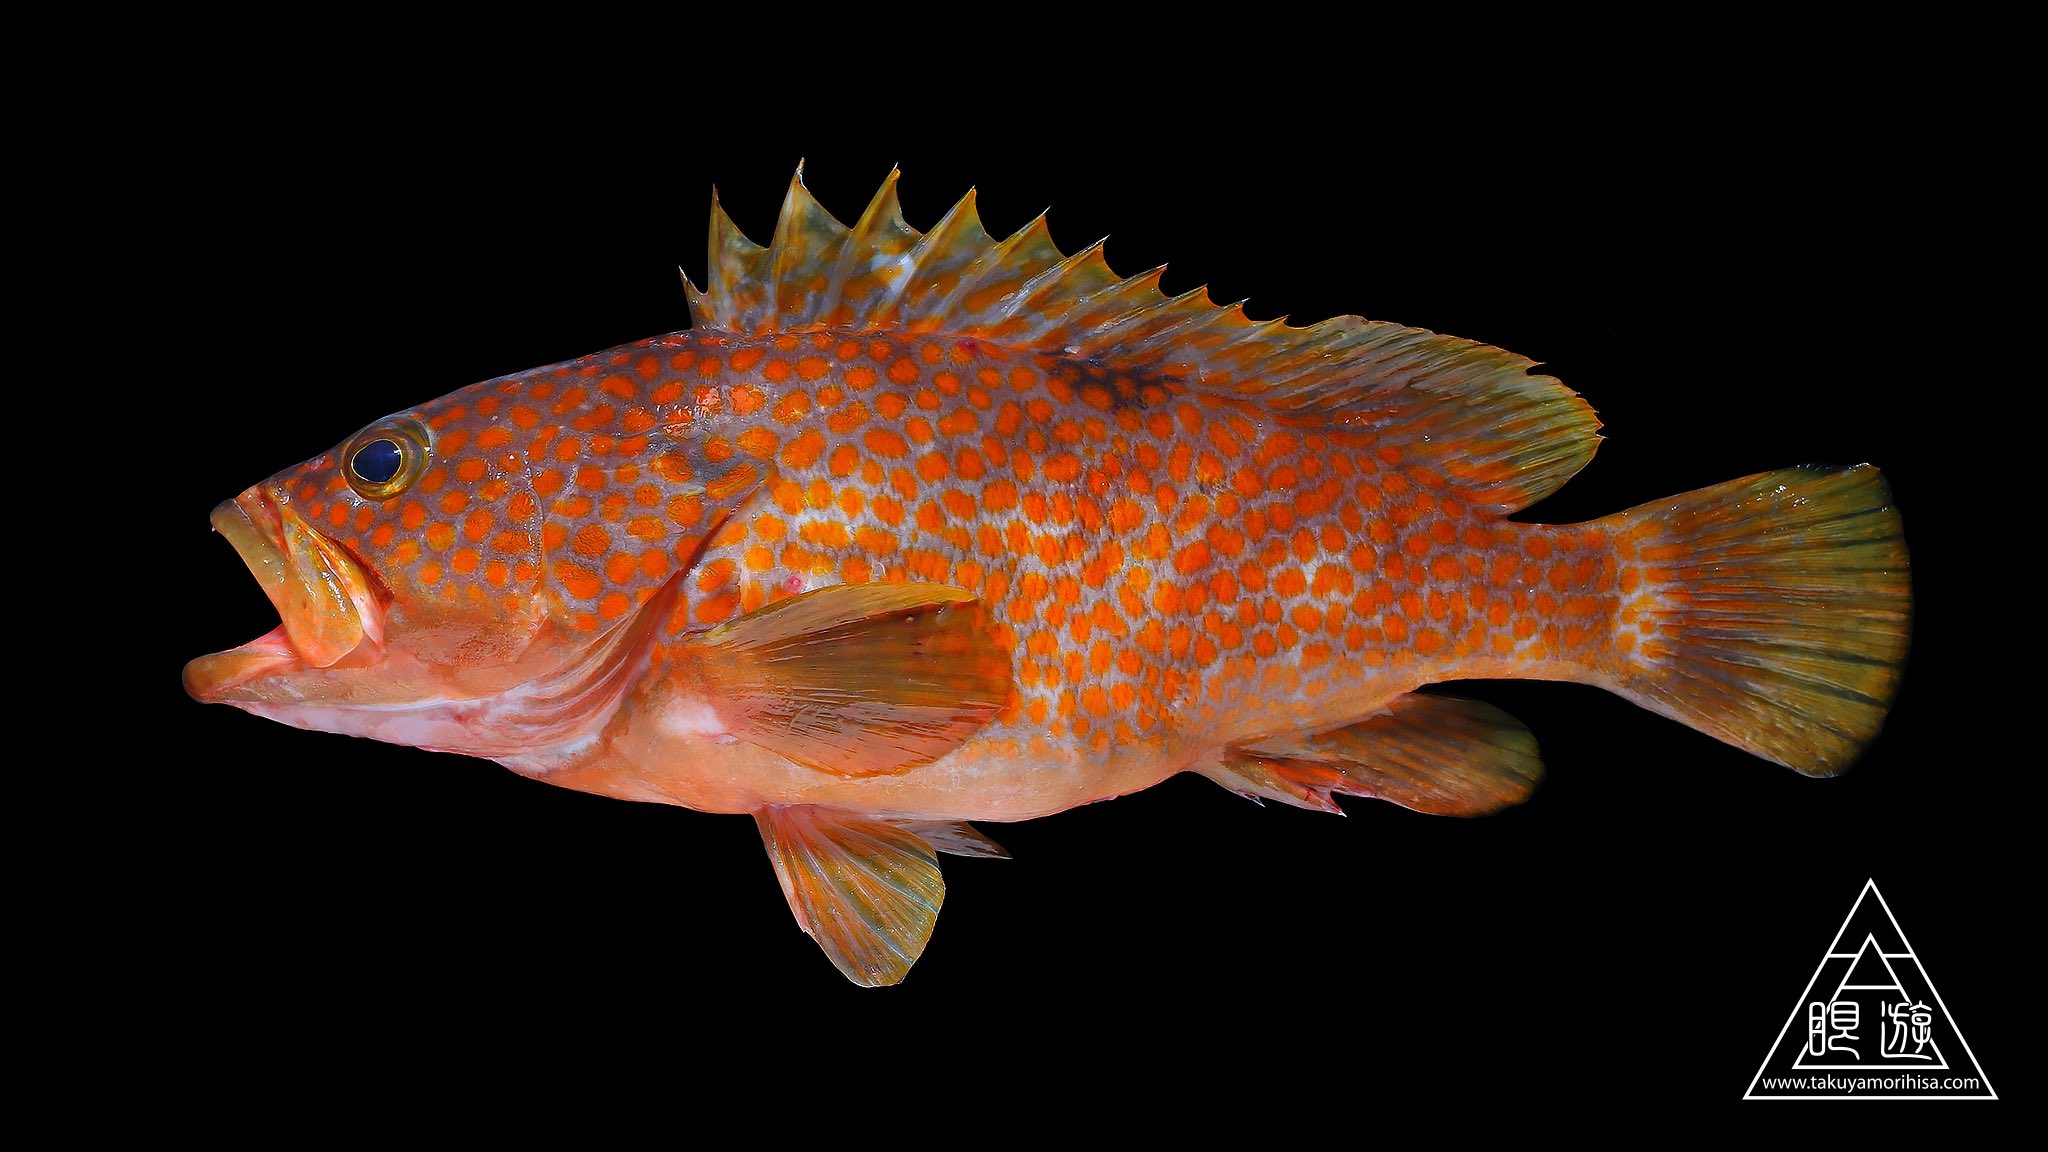 眼遊 Ganyu キジハタ 前からこの魚に目をつけていました 眩しいくらい鮮やかなオレンジ色の斑点 これをuv撮影するとどうなるでしょうか にアンケートの形でクイズを置いておくので予想してみてください T Co V2toesukqw Twitter